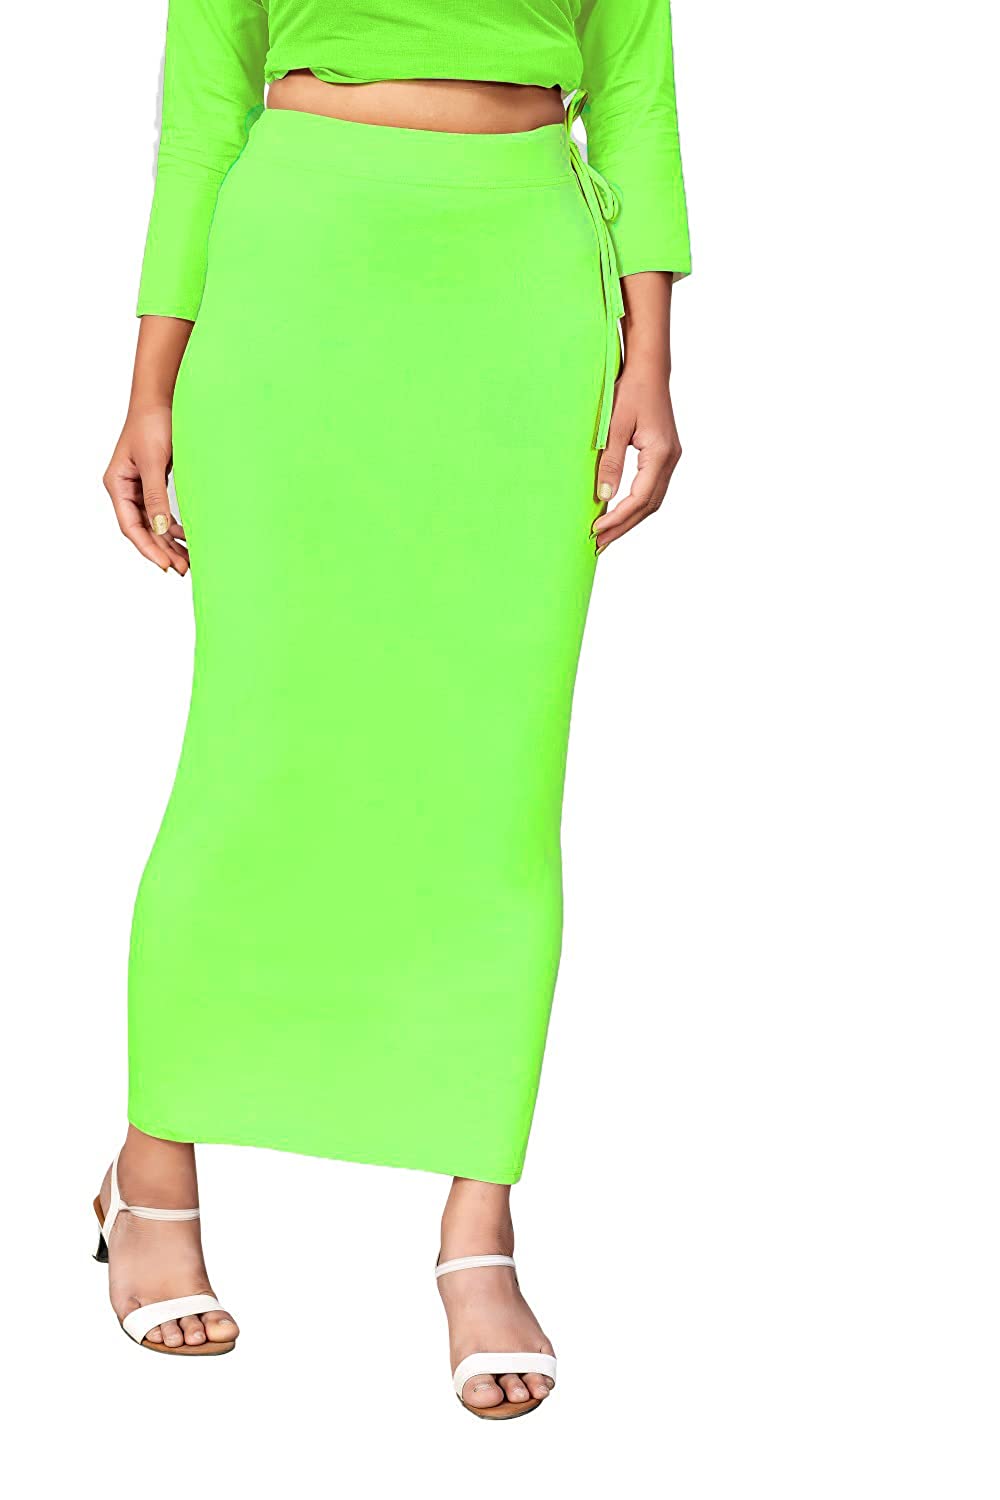 Saree Shapewear - Parrot Green - Swapna Creation